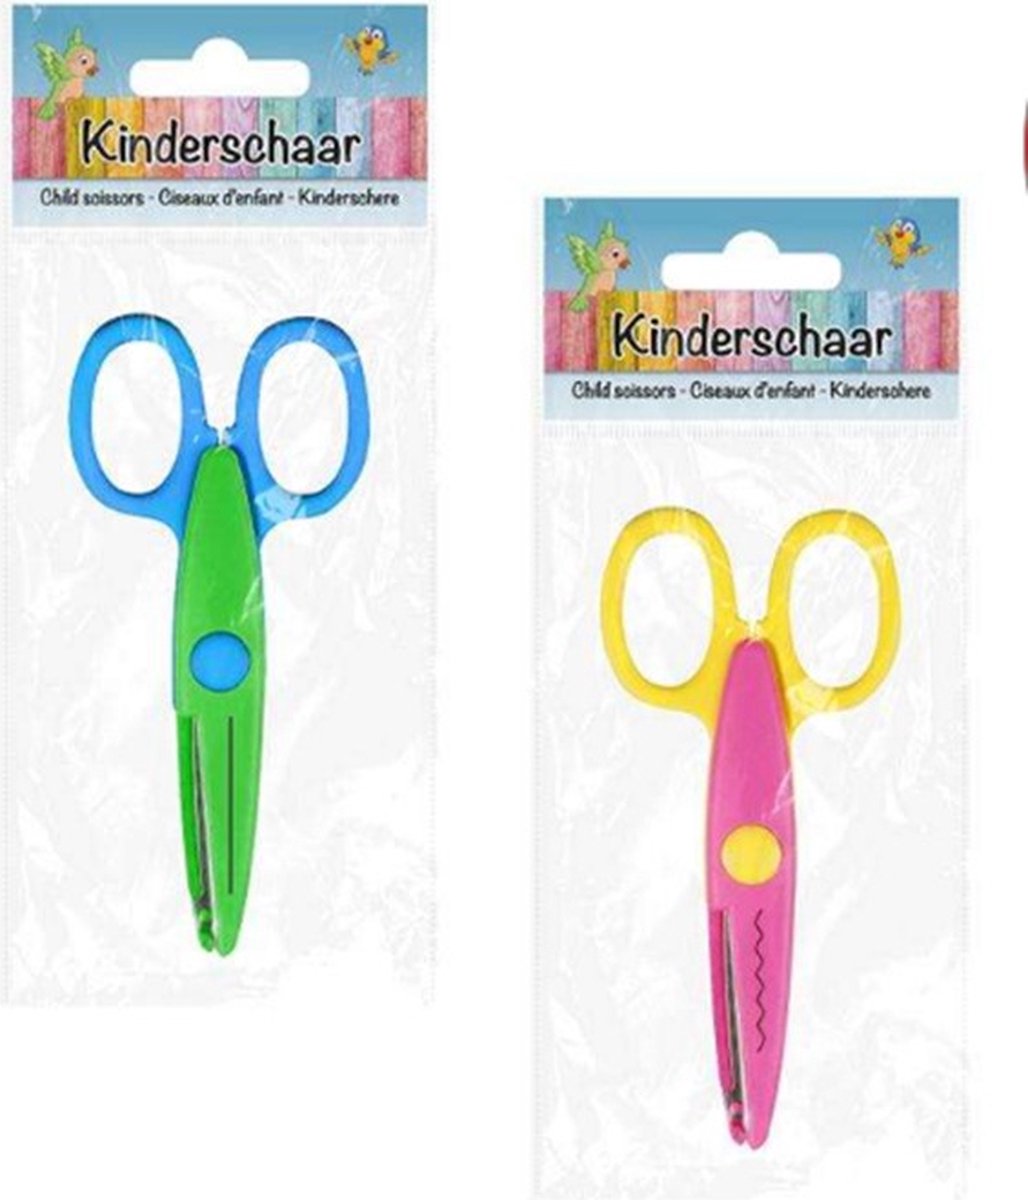 Kinderschaar Roze Geel - Hobbyschaar - Knutselen Met Kinderen - Knutselcadeau - Schaar Kids - Kleine Schaar - Knutsel Schaar - Schaar 14cm